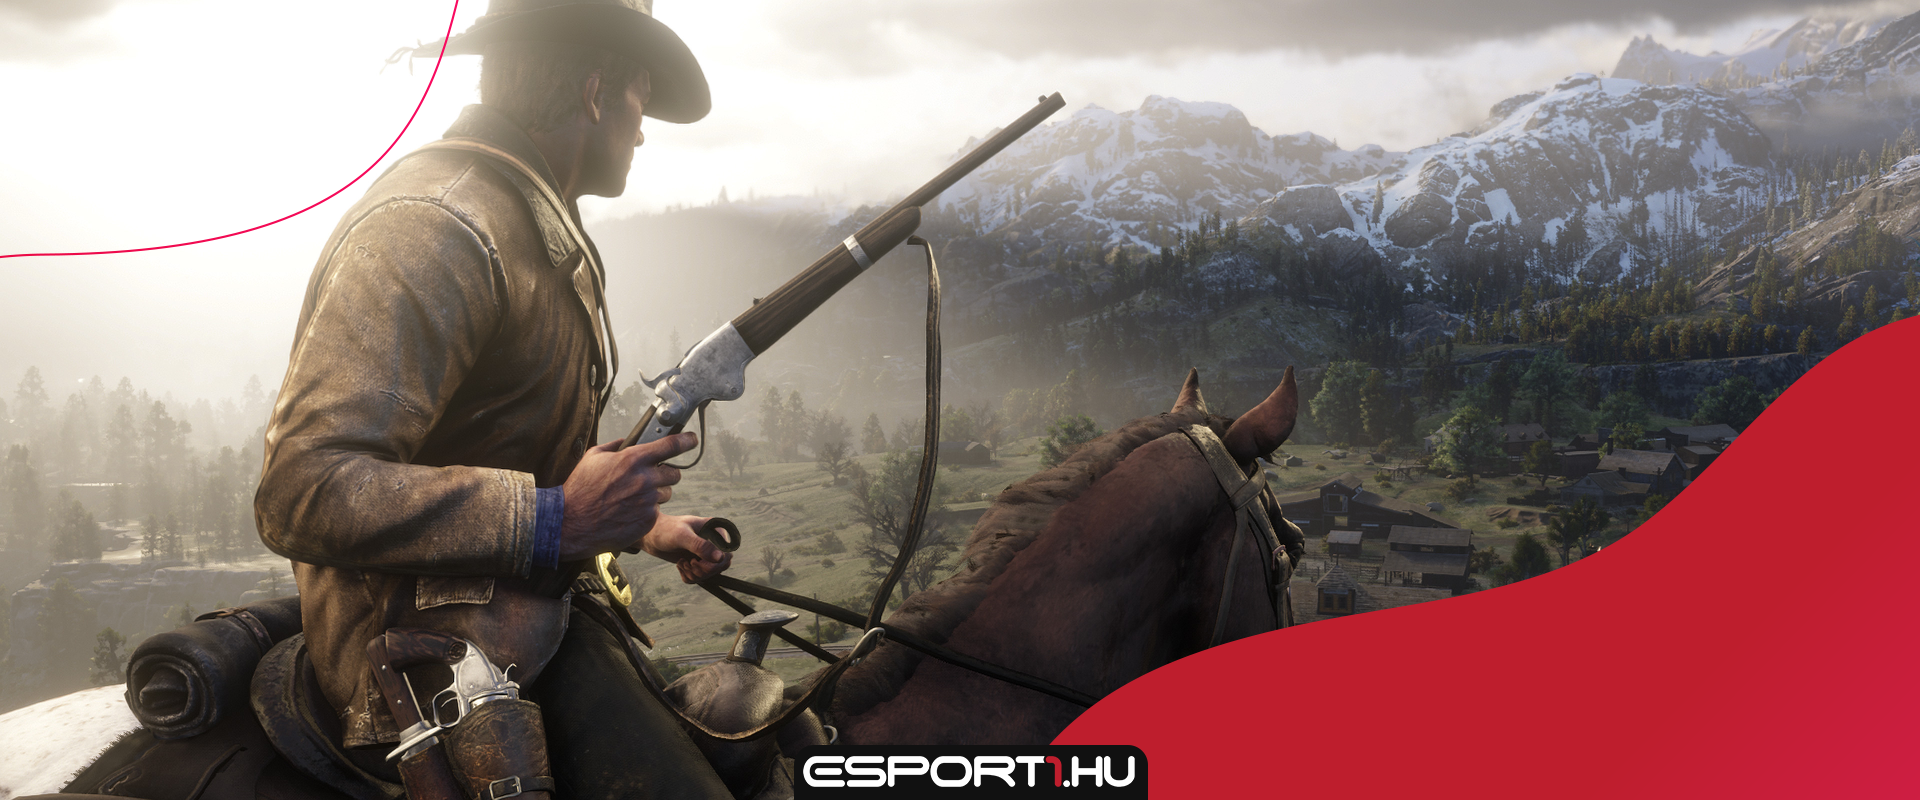 Bejelentette a Rockstar: még idén kiadják a Red Dead Redemption 2 PC-s verzióját!